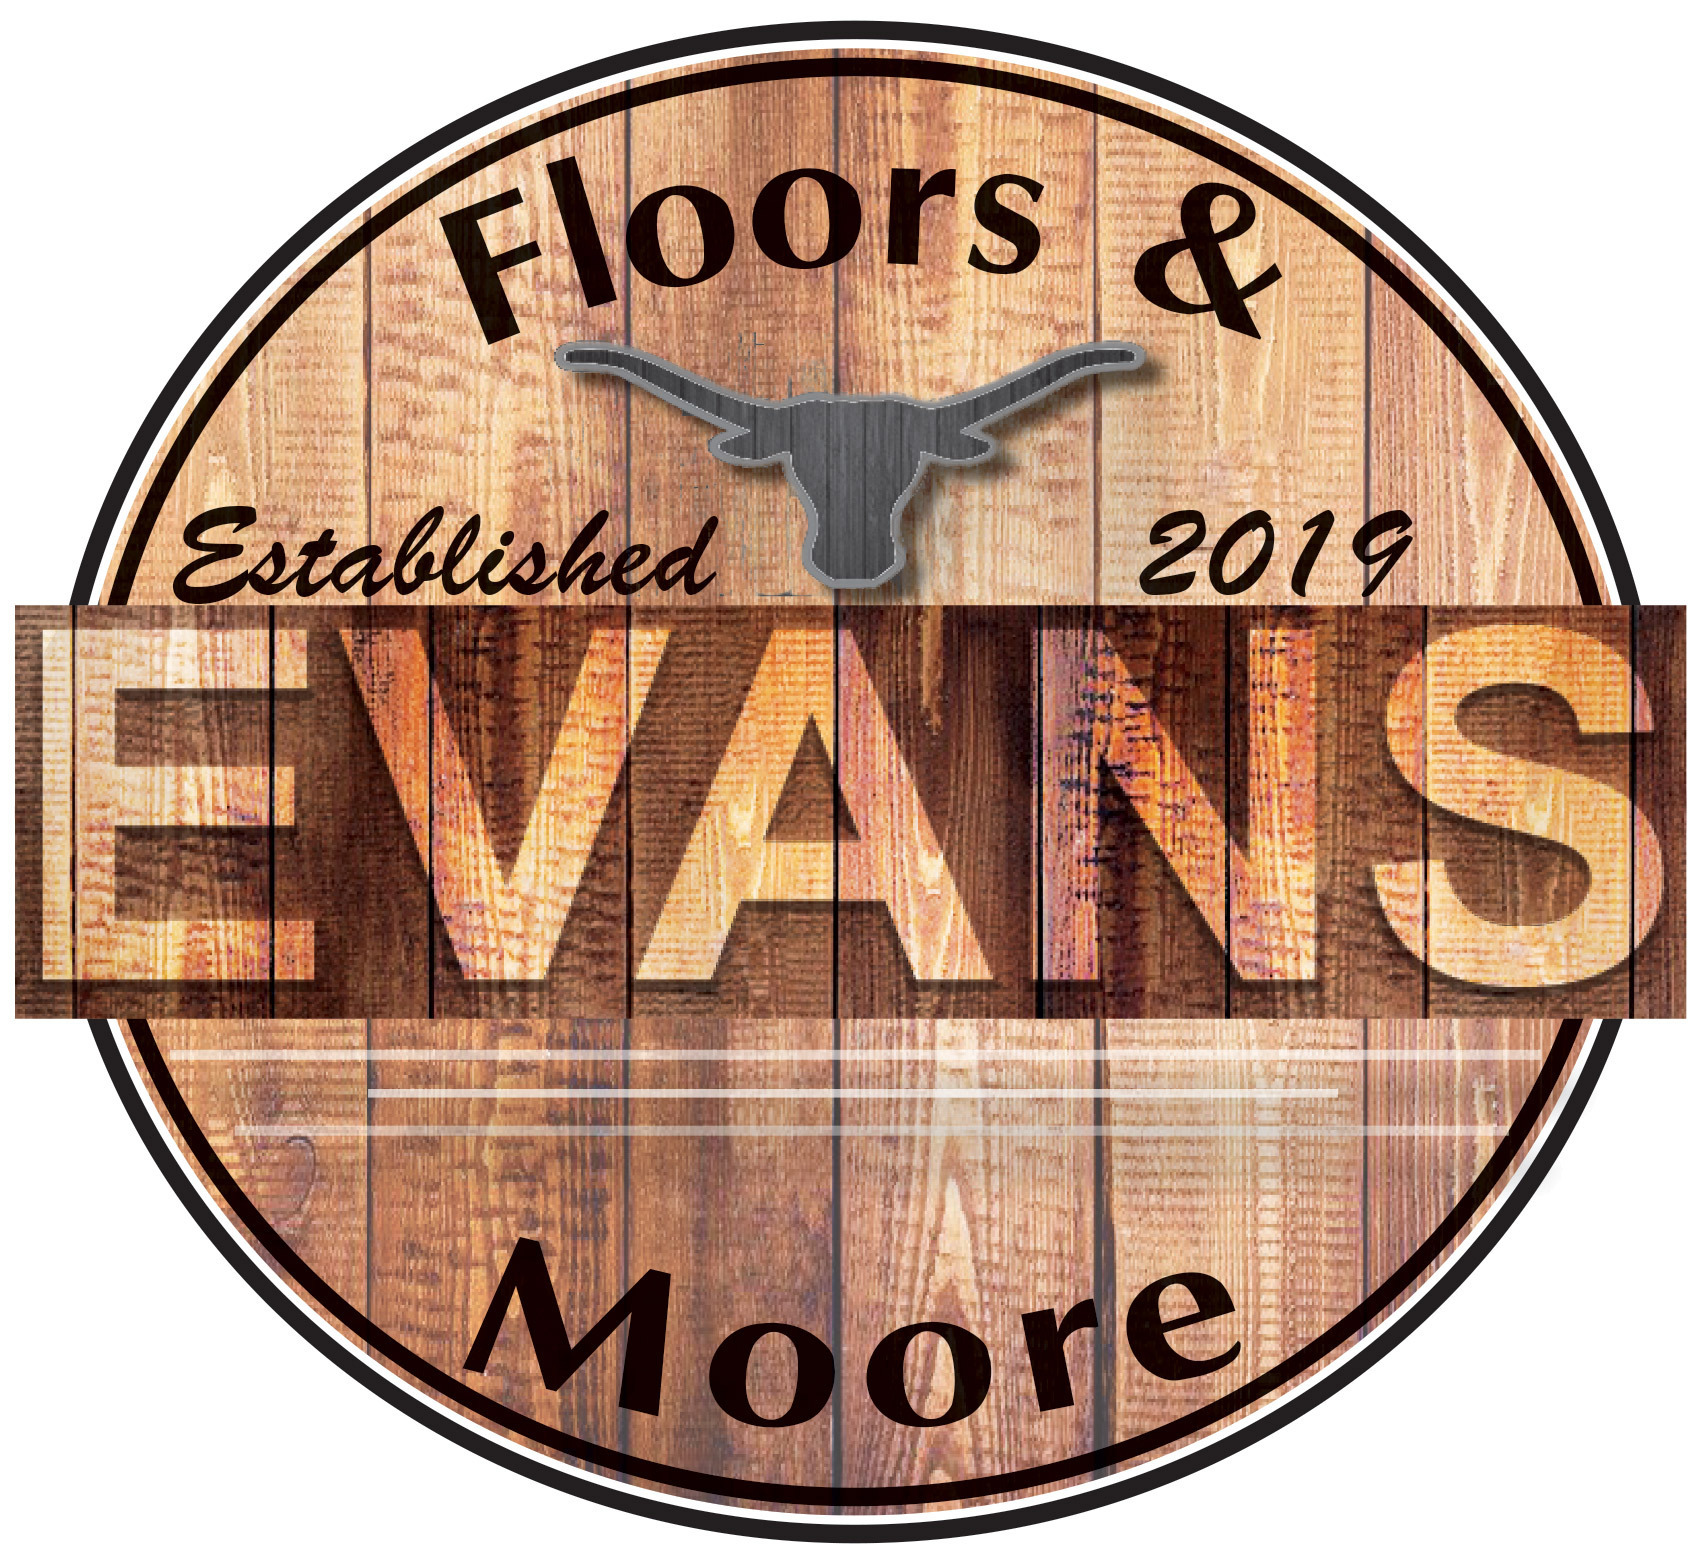 Evans Floors & Moore